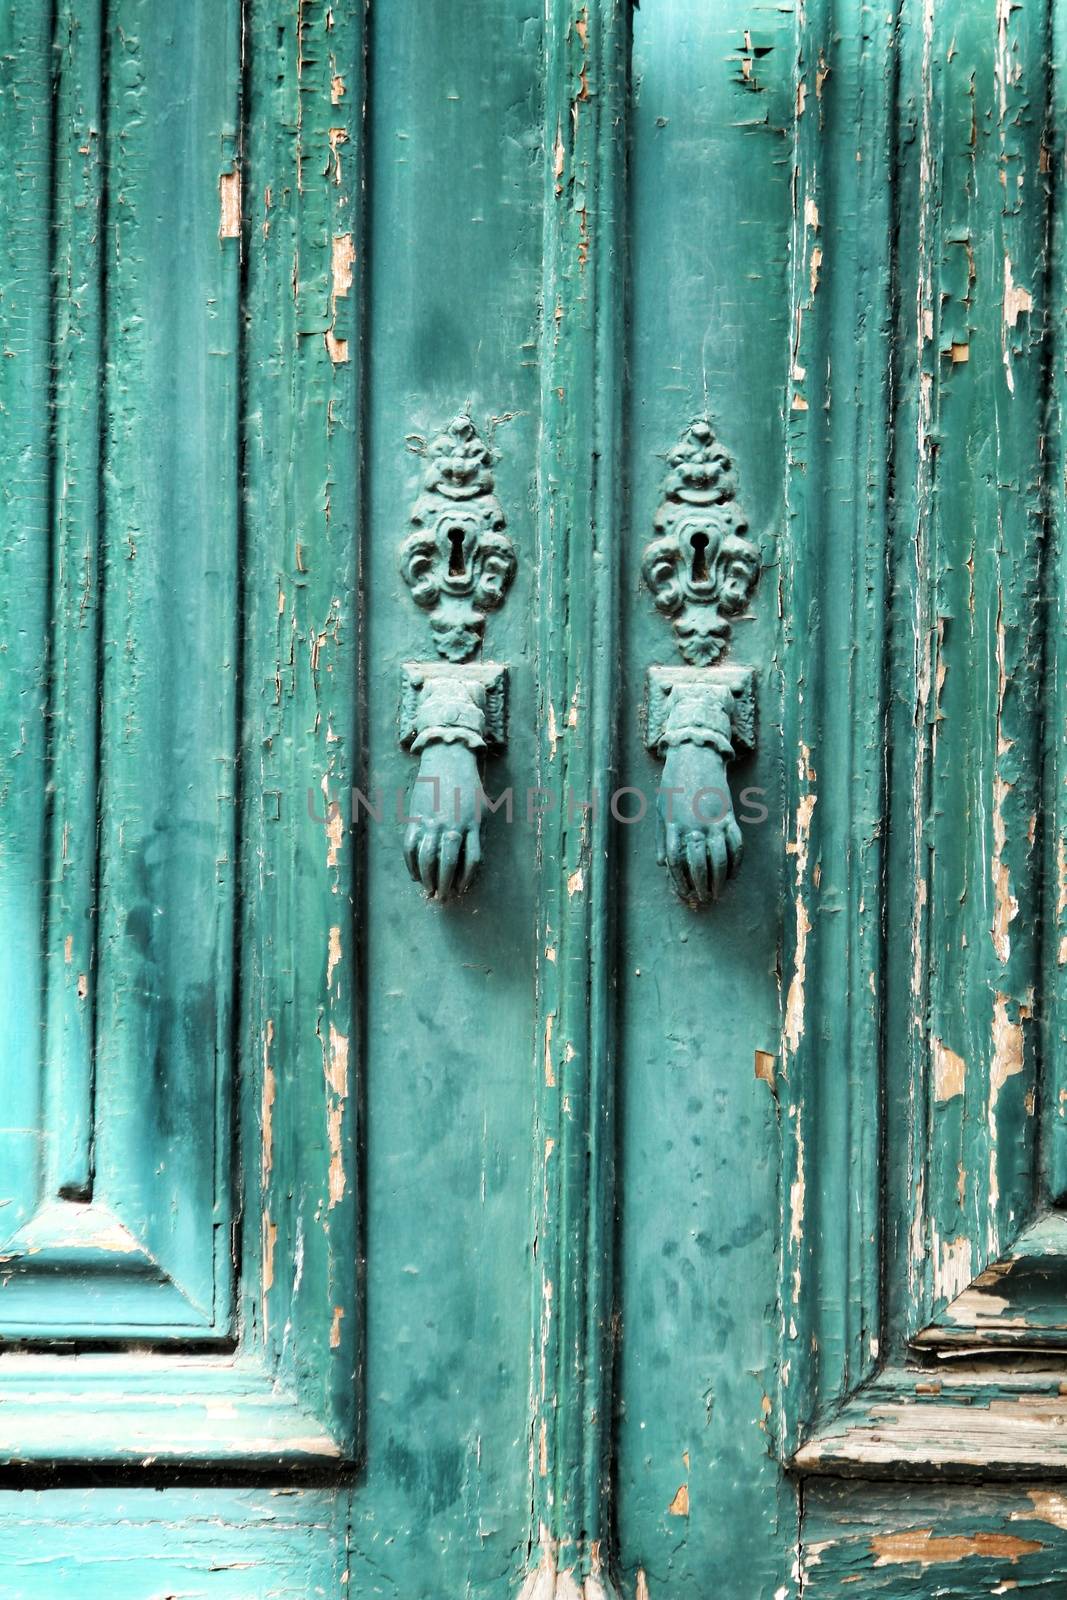 Door knockers with hand shape on green wooden door in Lisbon, Portugal